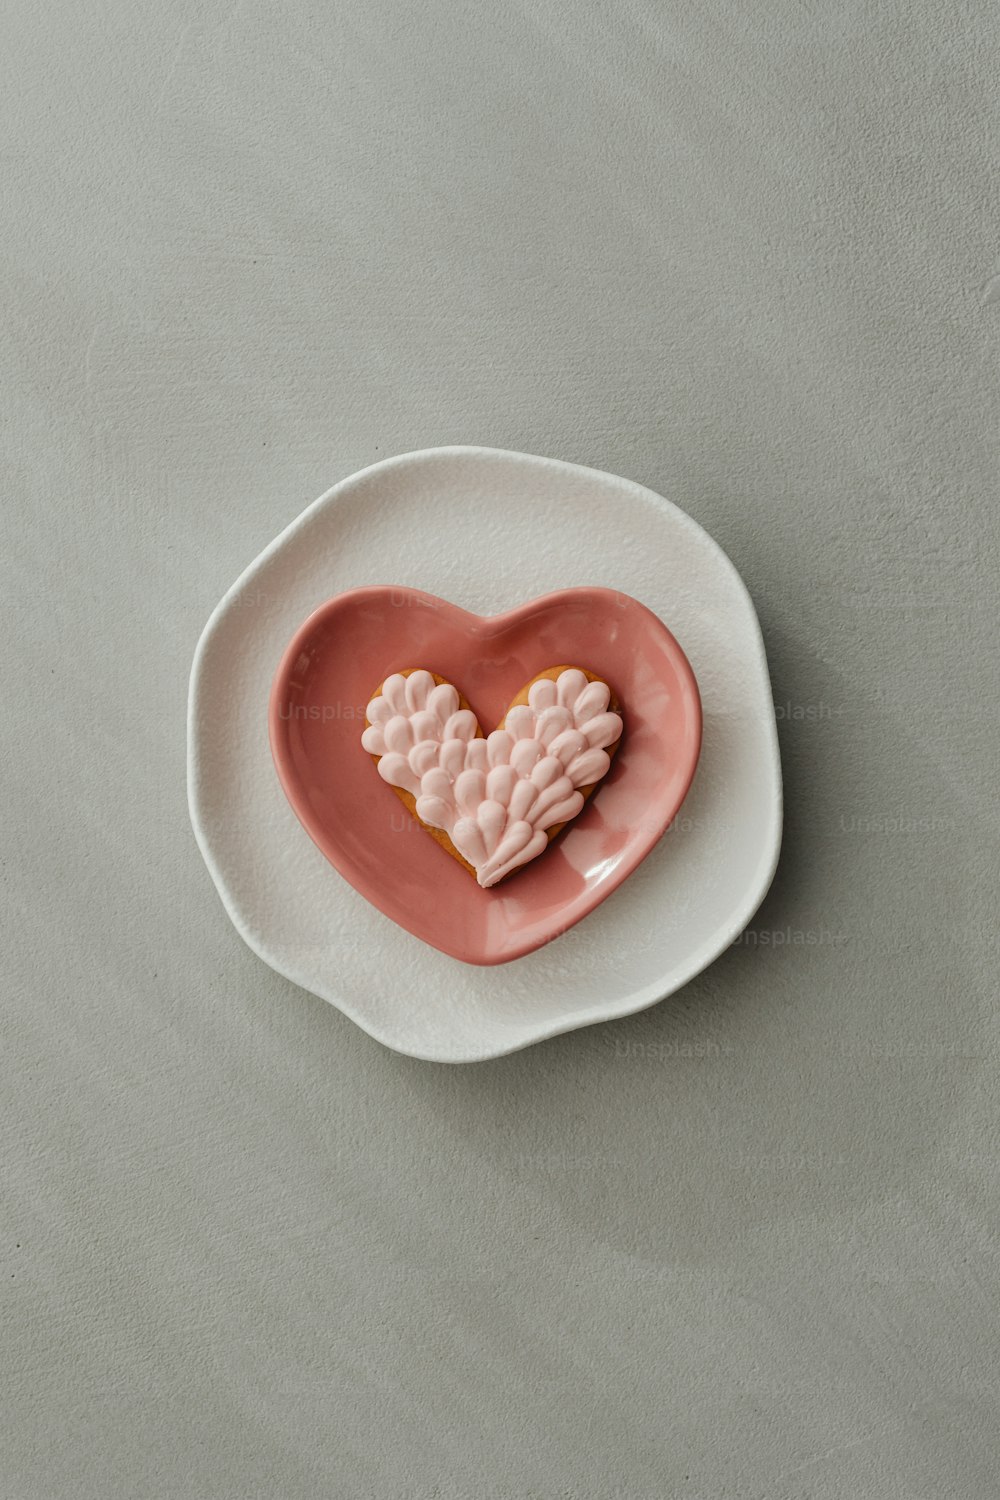 Una galleta en forma de corazón sentada encima de un plato blanco